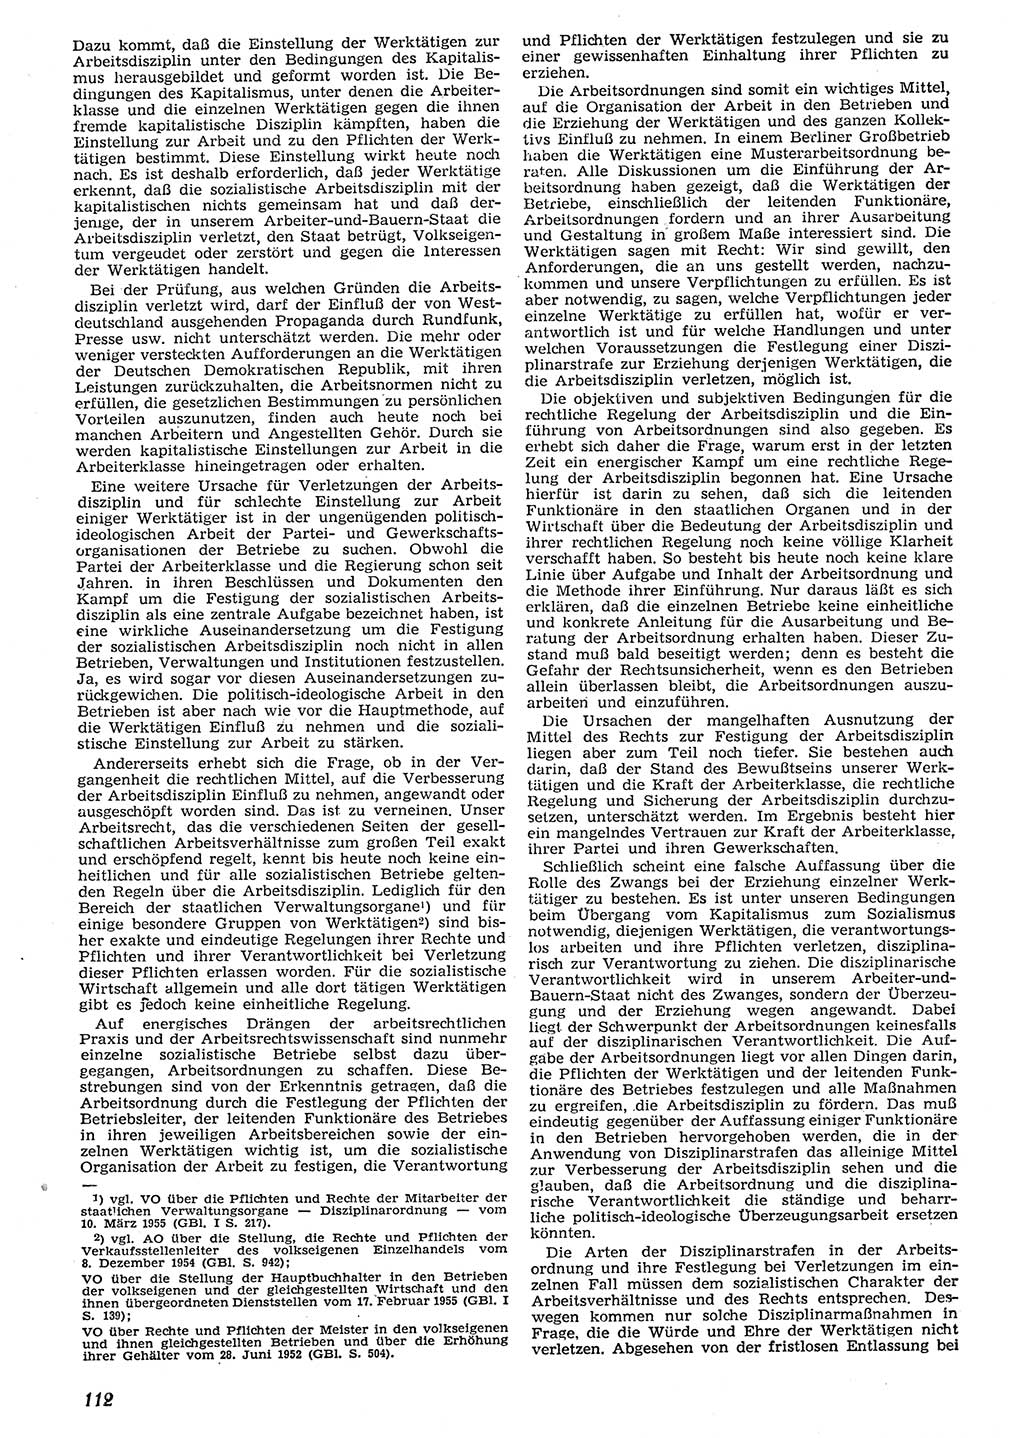 Neue Justiz (NJ), Zeitschrift für Recht und Rechtswissenschaft [Deutsche Demokratische Republik (DDR)], 10. Jahrgang 1956, Seite 112 (NJ DDR 1956, S. 112)